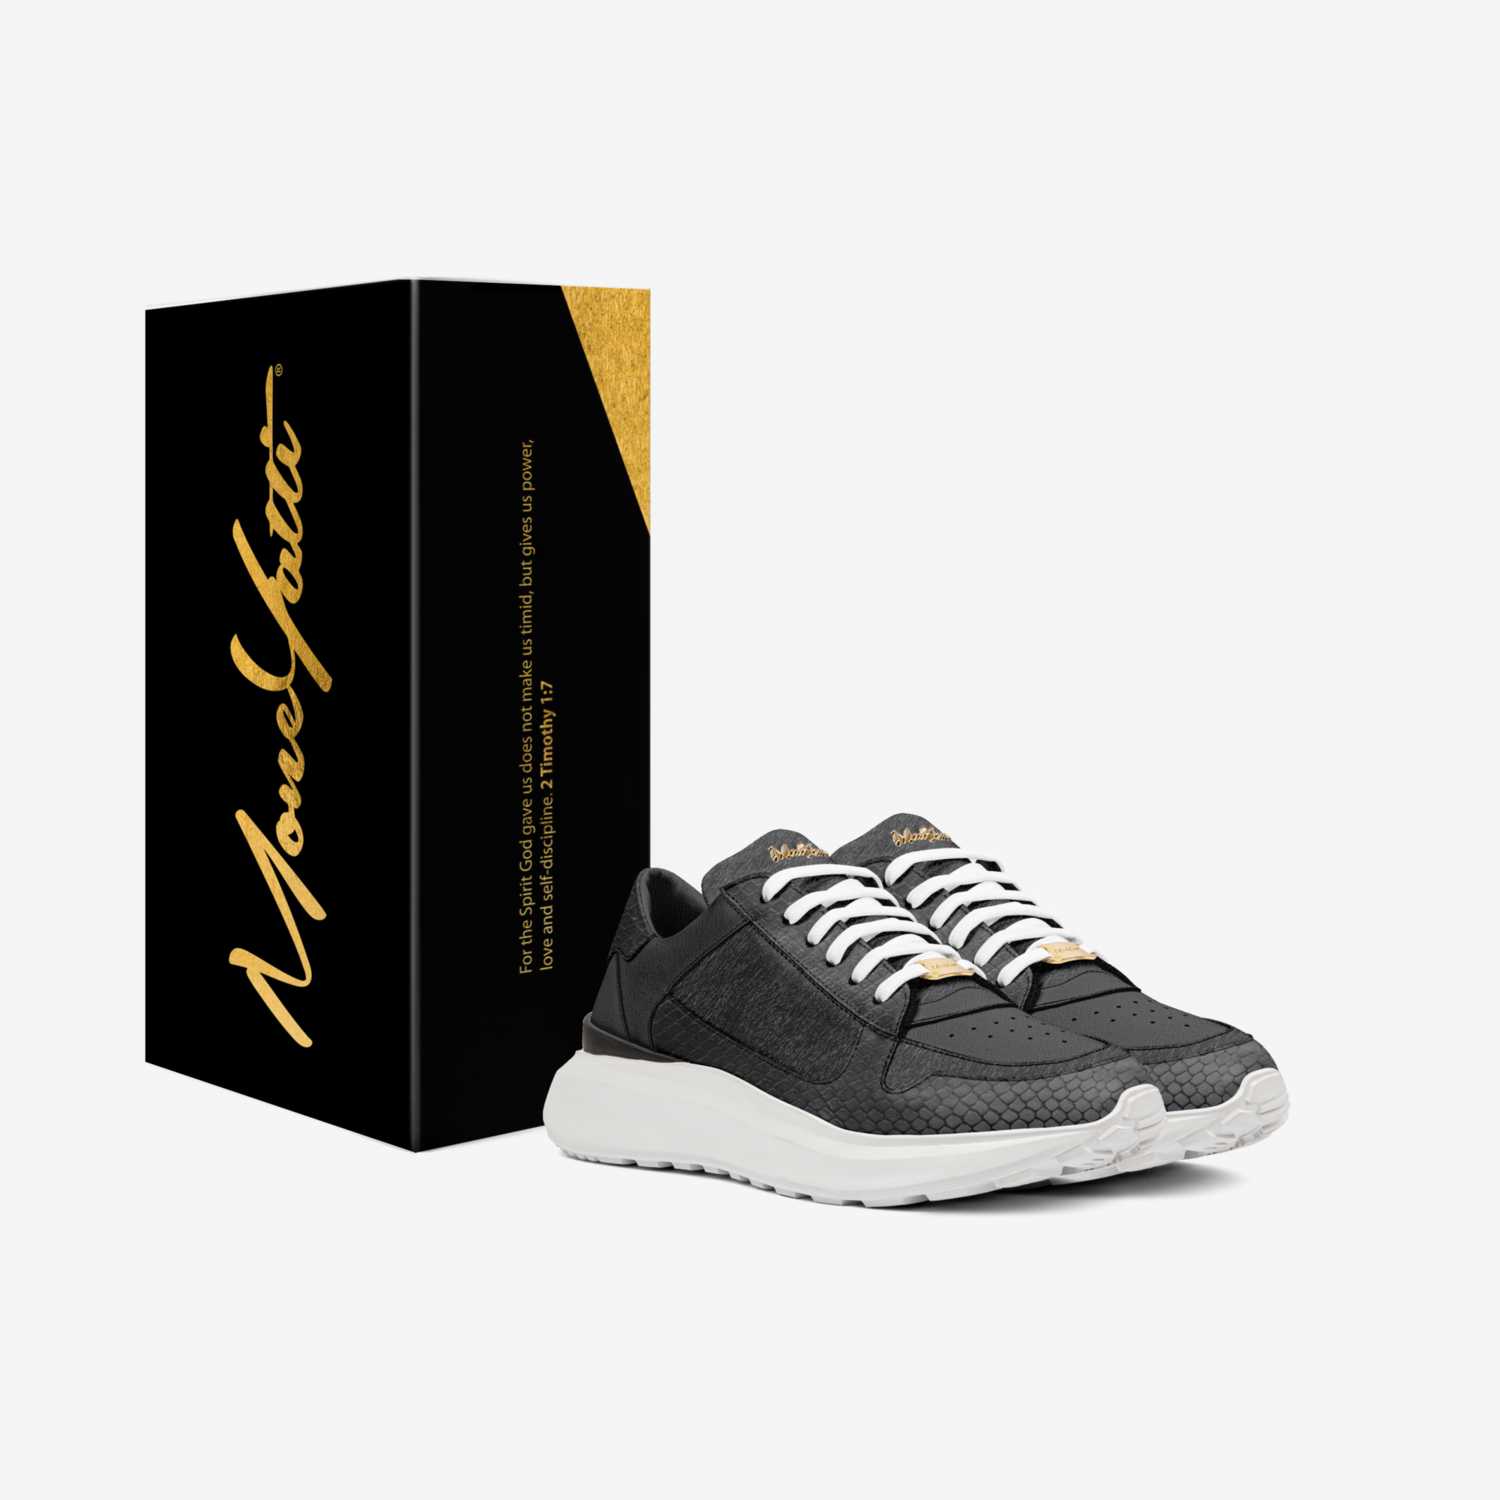 MONEYATTI LS010 custom made in Italy shoes by Moneyatti Brand | Box view